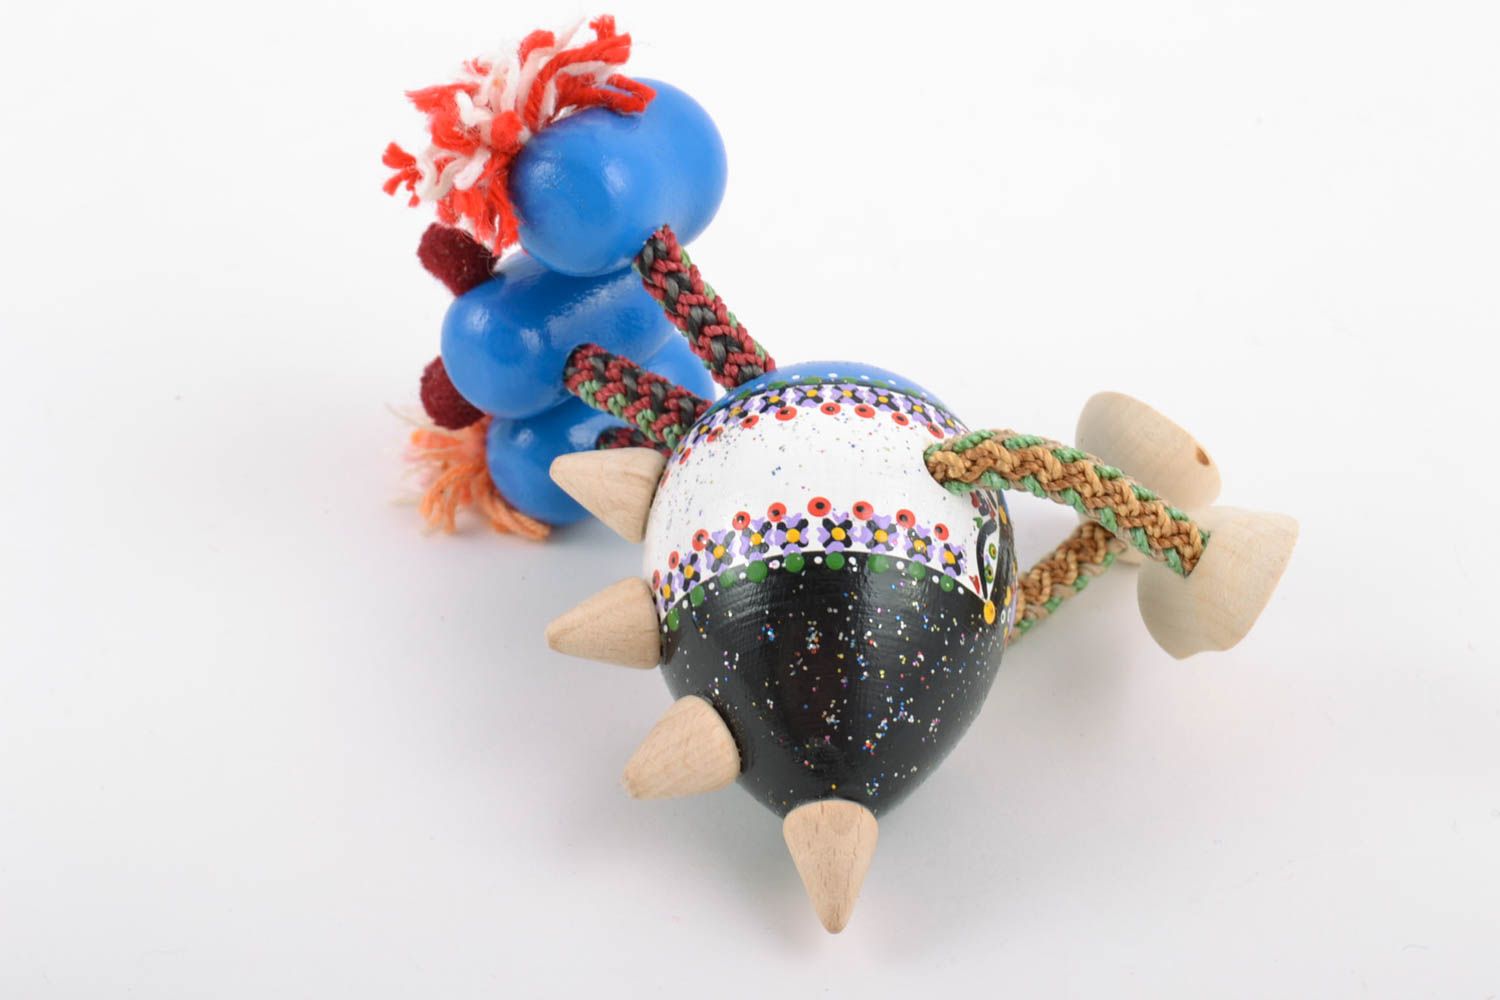 Деревянная эко игрушка дракончик синий расписанная красками ручной работы фото 4